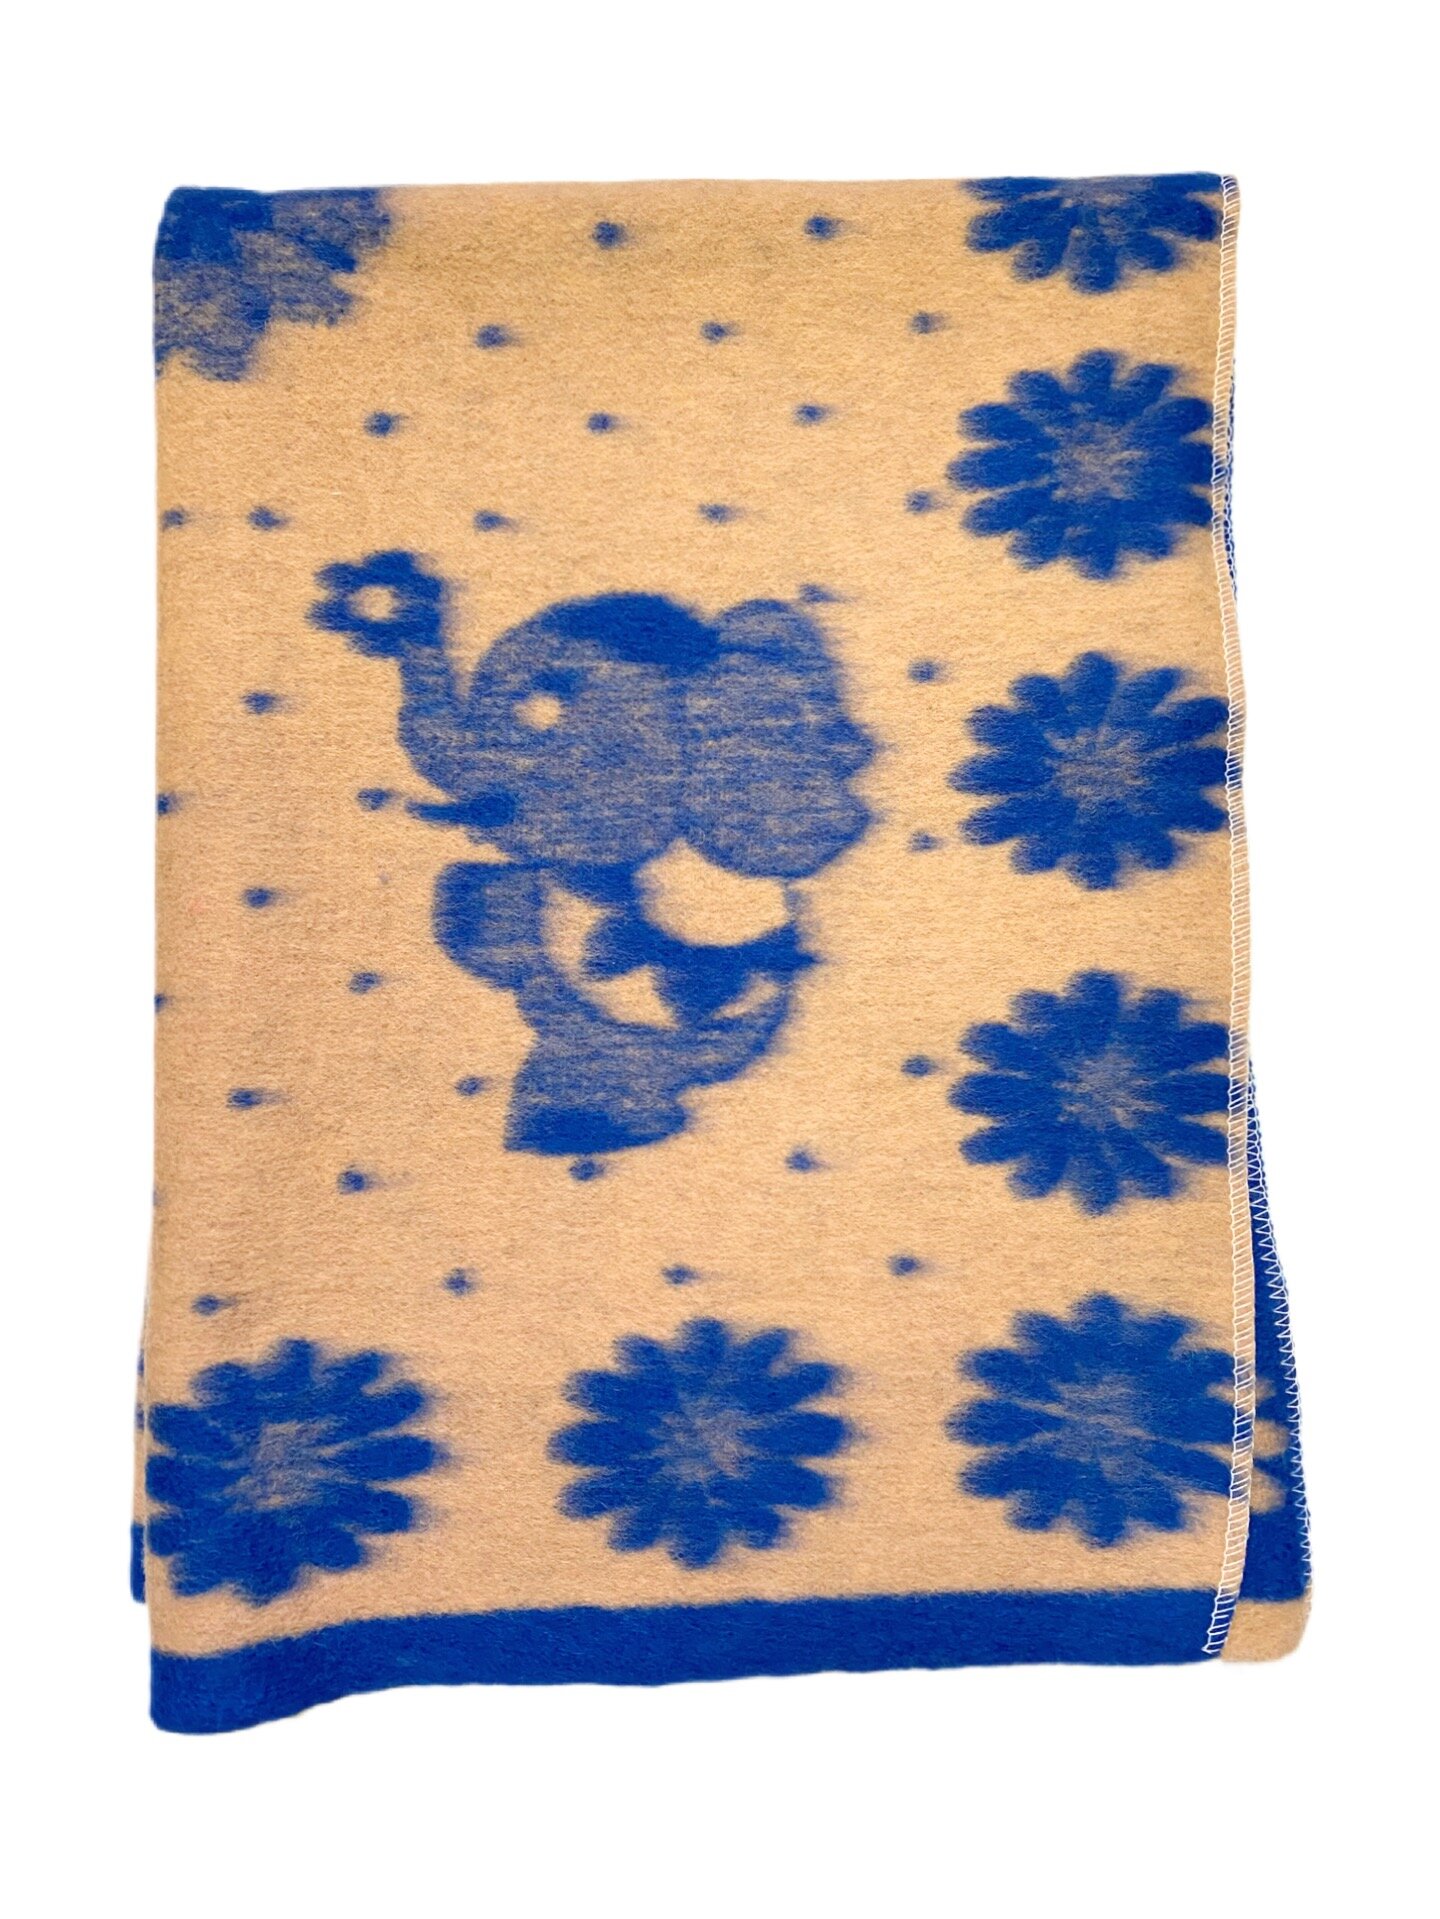 Детское шерстяное одеяло "Слон", 100 х 140 см, жаккардовое